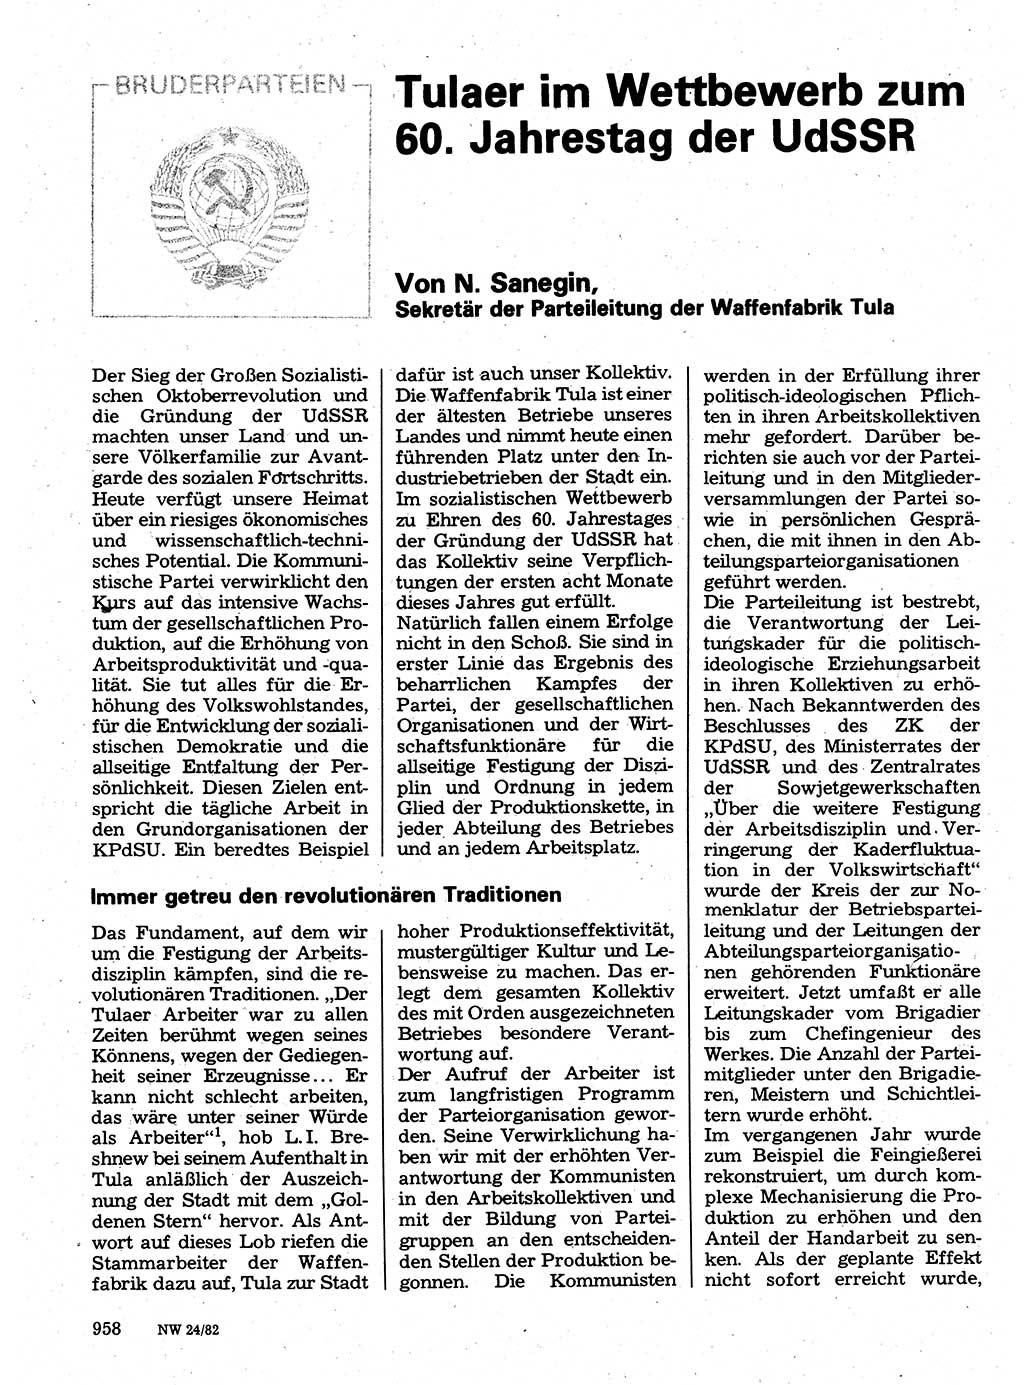 Neuer Weg (NW), Organ des Zentralkomitees (ZK) der SED (Sozialistische Einheitspartei Deutschlands) für Fragen des Parteilebens, 37. Jahrgang [Deutsche Demokratische Republik (DDR)] 1982, Seite 958 (NW ZK SED DDR 1982, S. 958)